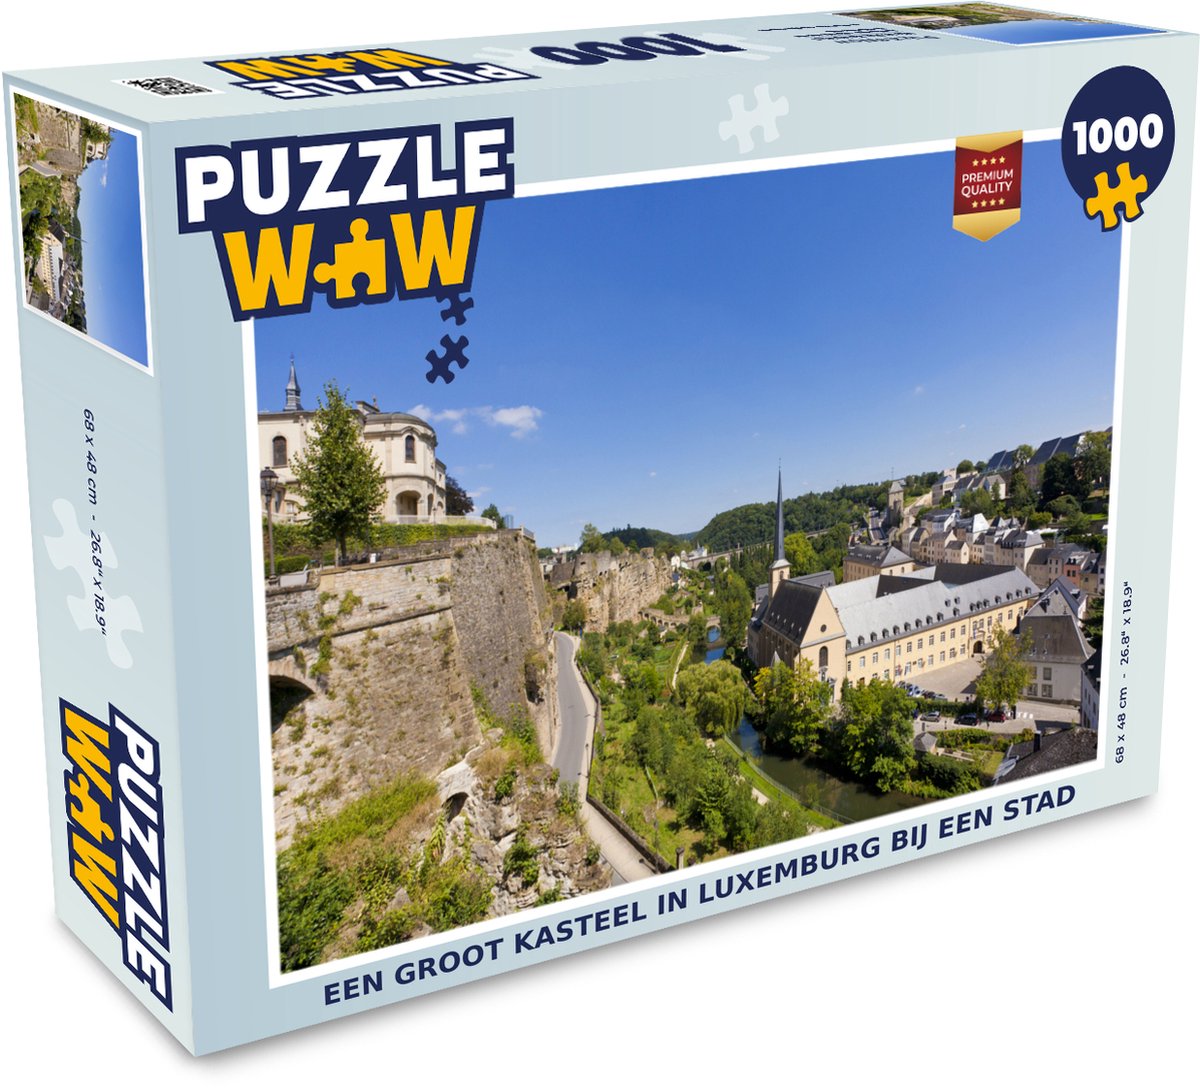 Puzzel Een groot kasteel in Luxemburg bij een stad - Legpuzzel - Puzzel 1000 stukjes volwassenen - PuzzleWow